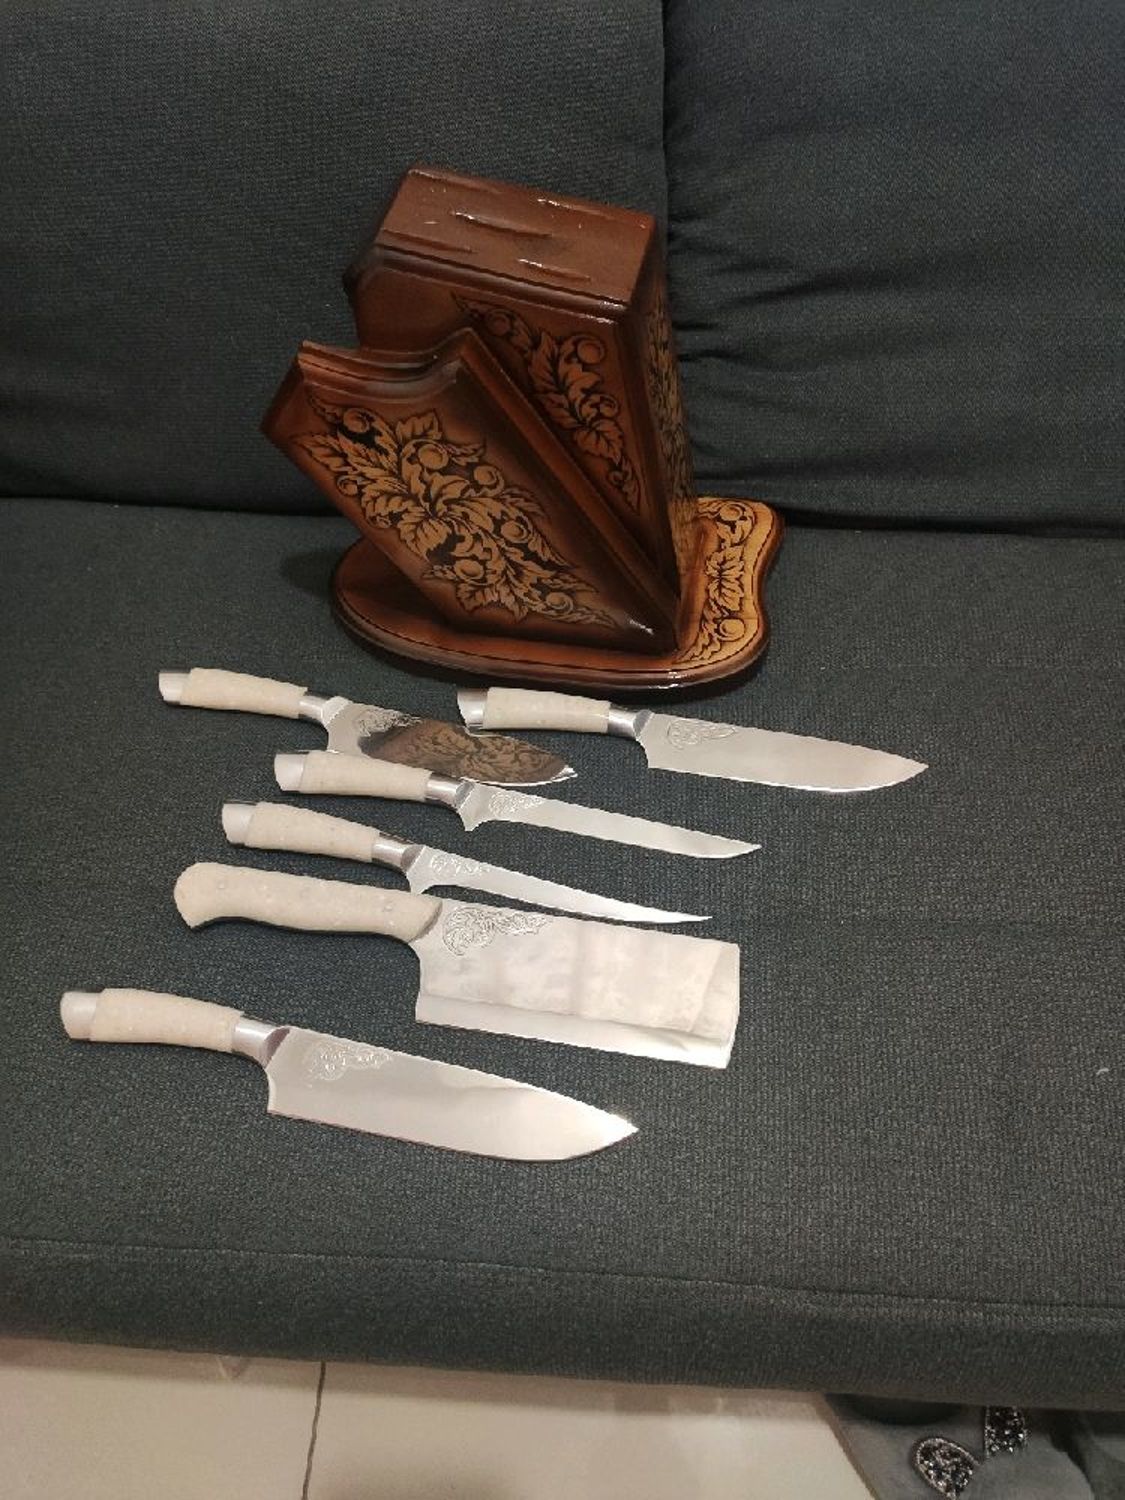 Photo №3 к отзыву покупателя Alexander Kovalenchik о товаре Кухонные ножи: Набор кухонных ножей